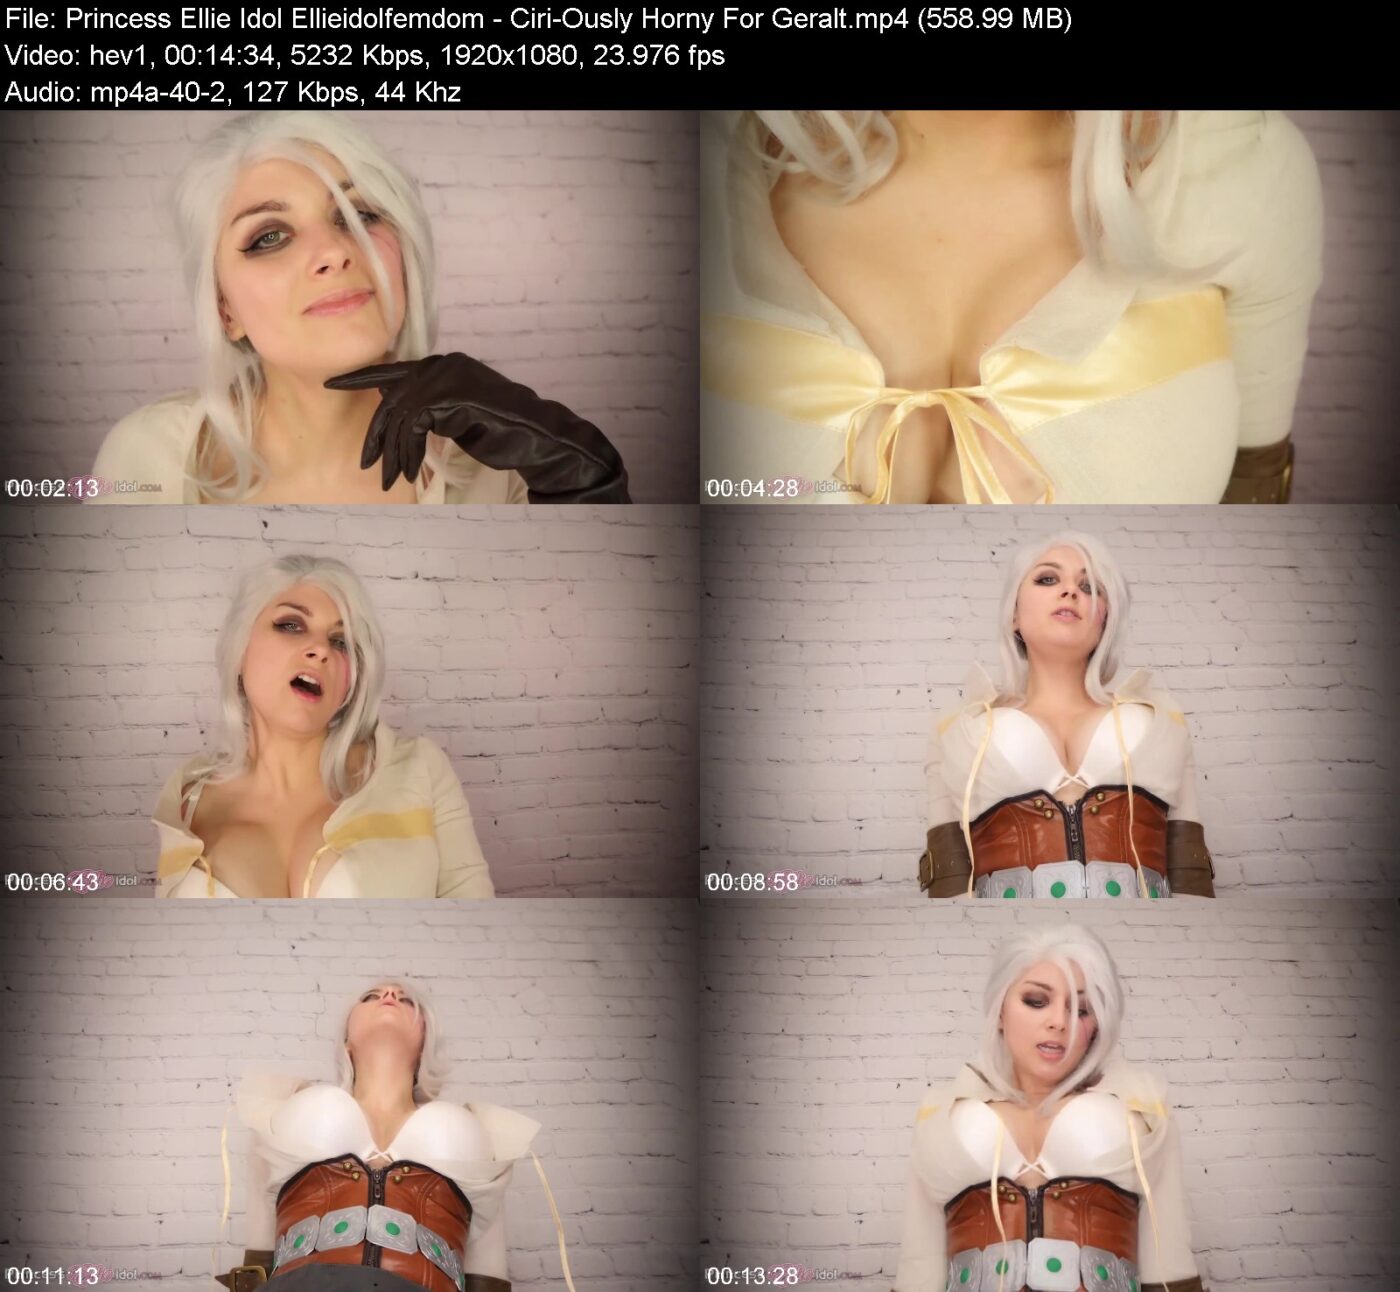 Princess Ellie Idol Ellieidolfemdom - Ciri-Ously Horny For Geralt